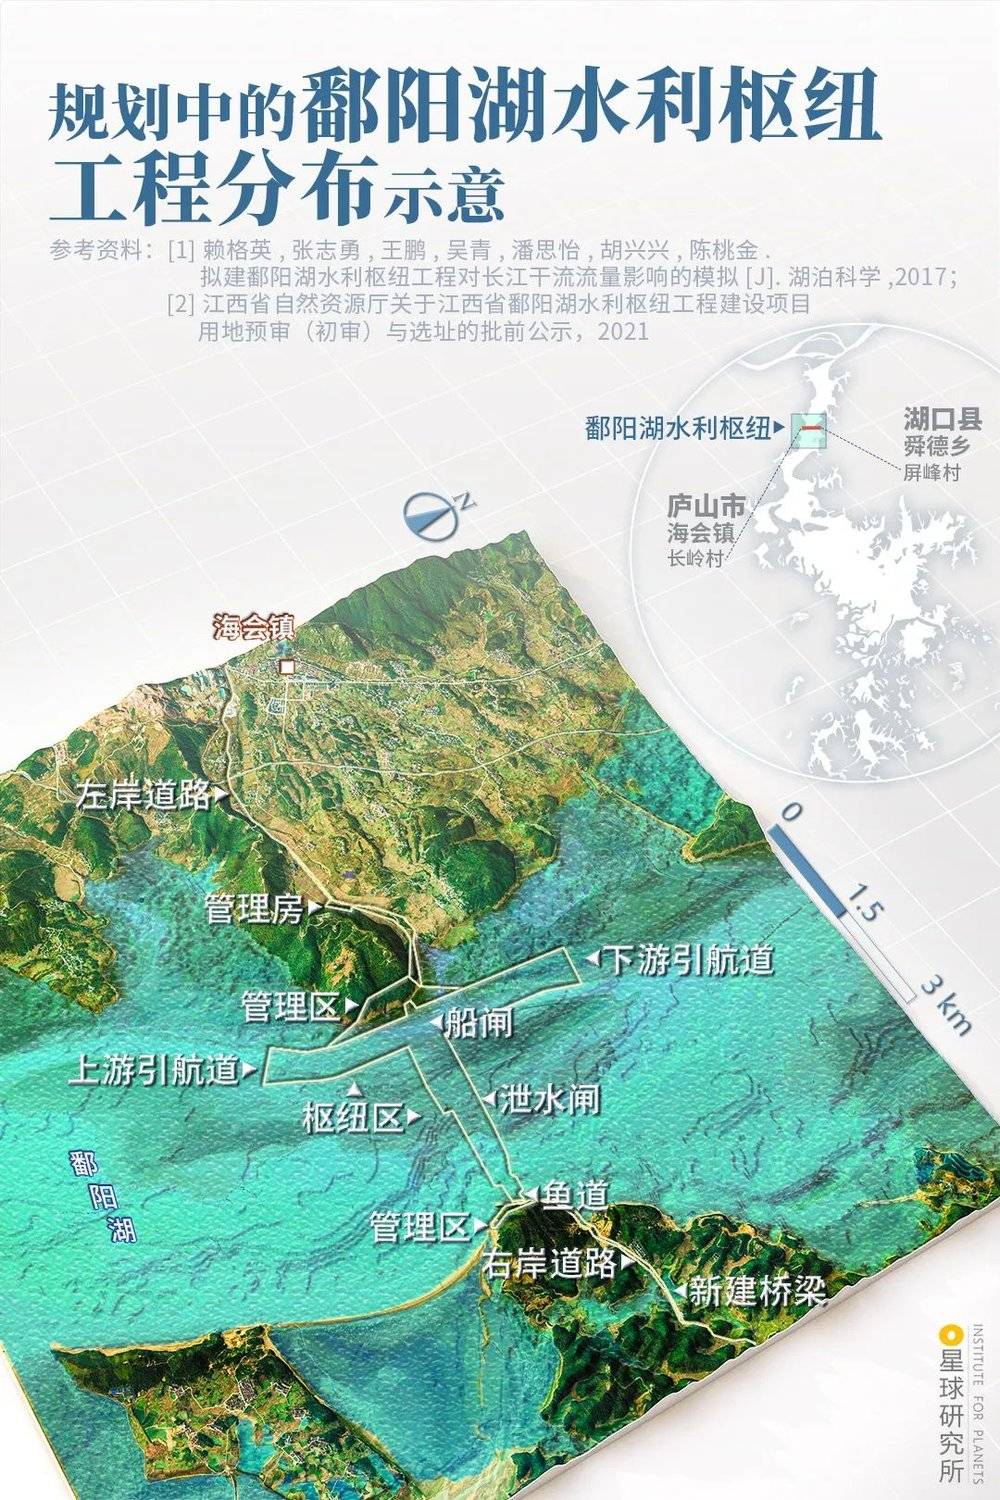 规划中的鄱阳湖水利枢纽工程分布示意，制图@陈志浩/星球研究所